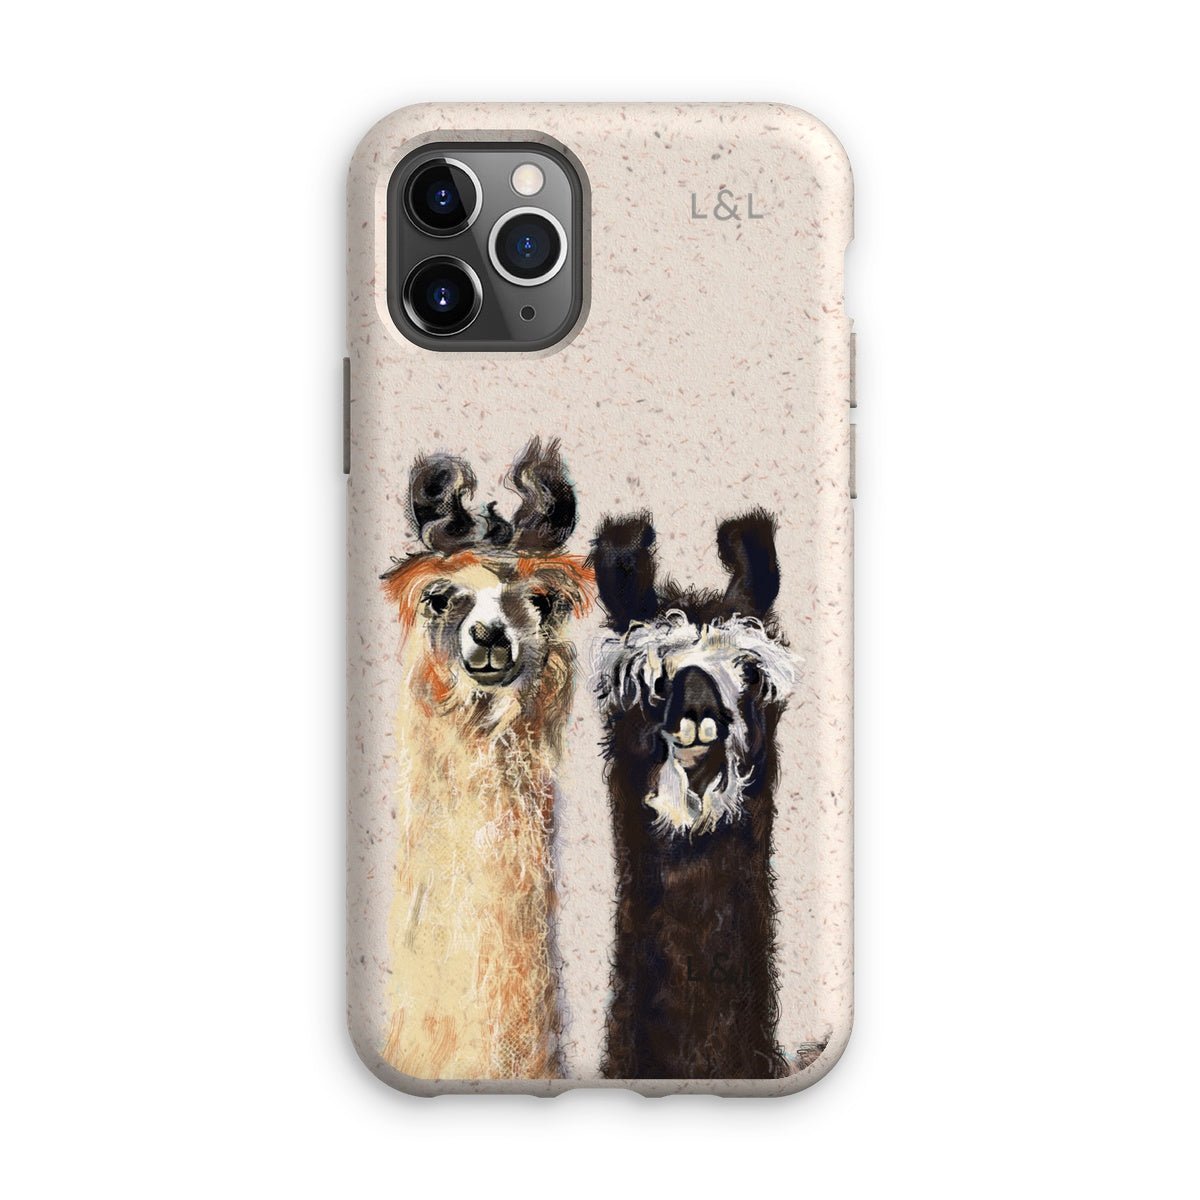 Llamas Eco Phone Case - Loam & Lore